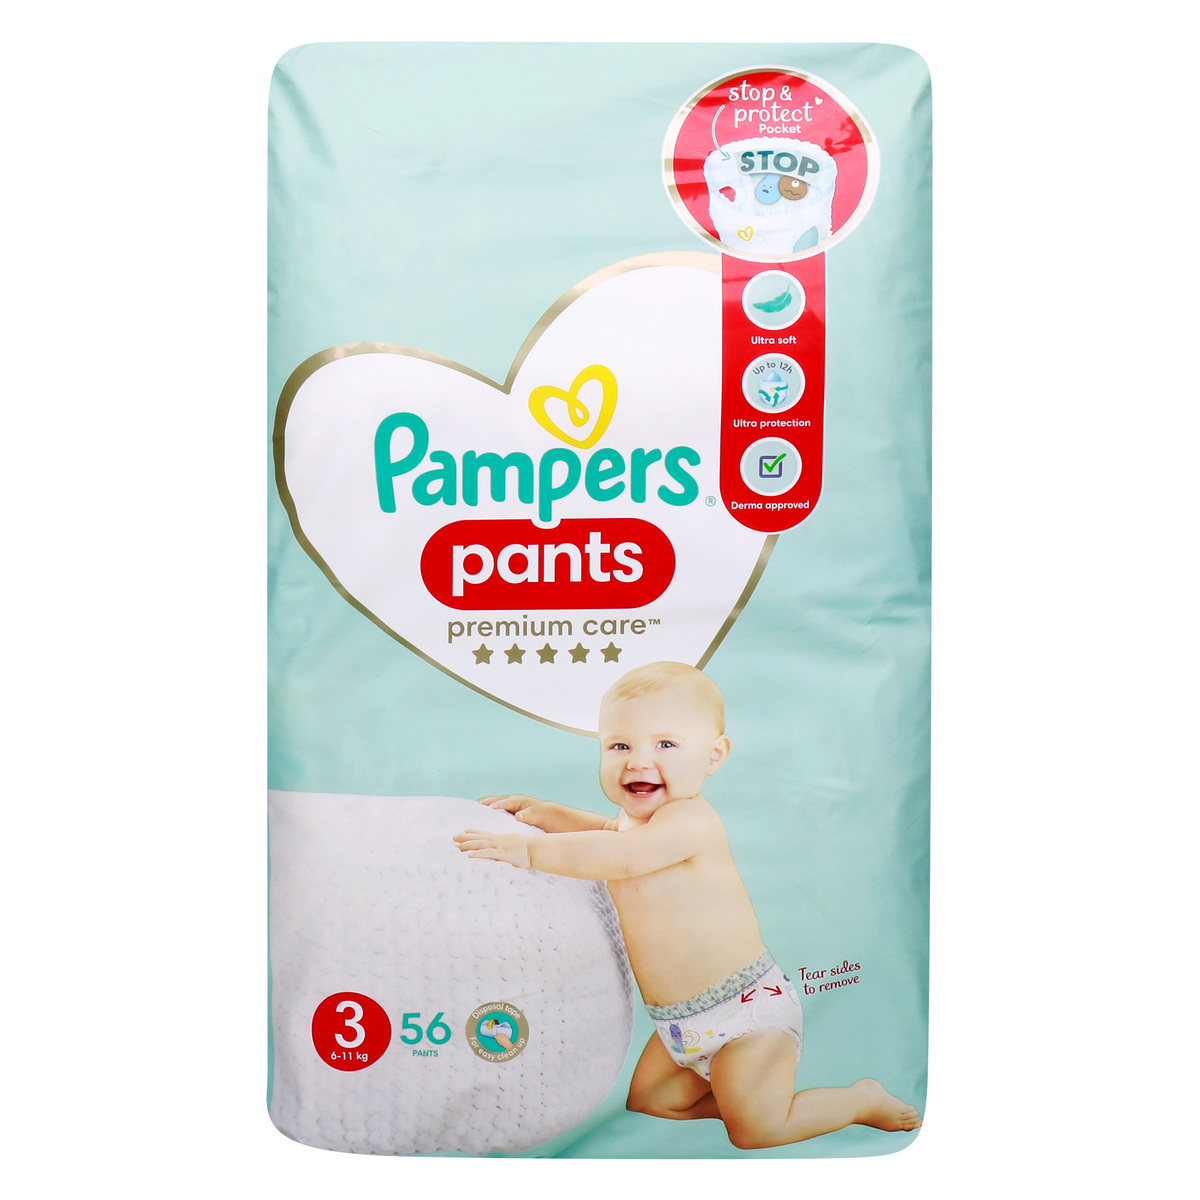 Pampers Premium Care Pants size 6 (15+kg) 31 pcs. au meilleur prix sur